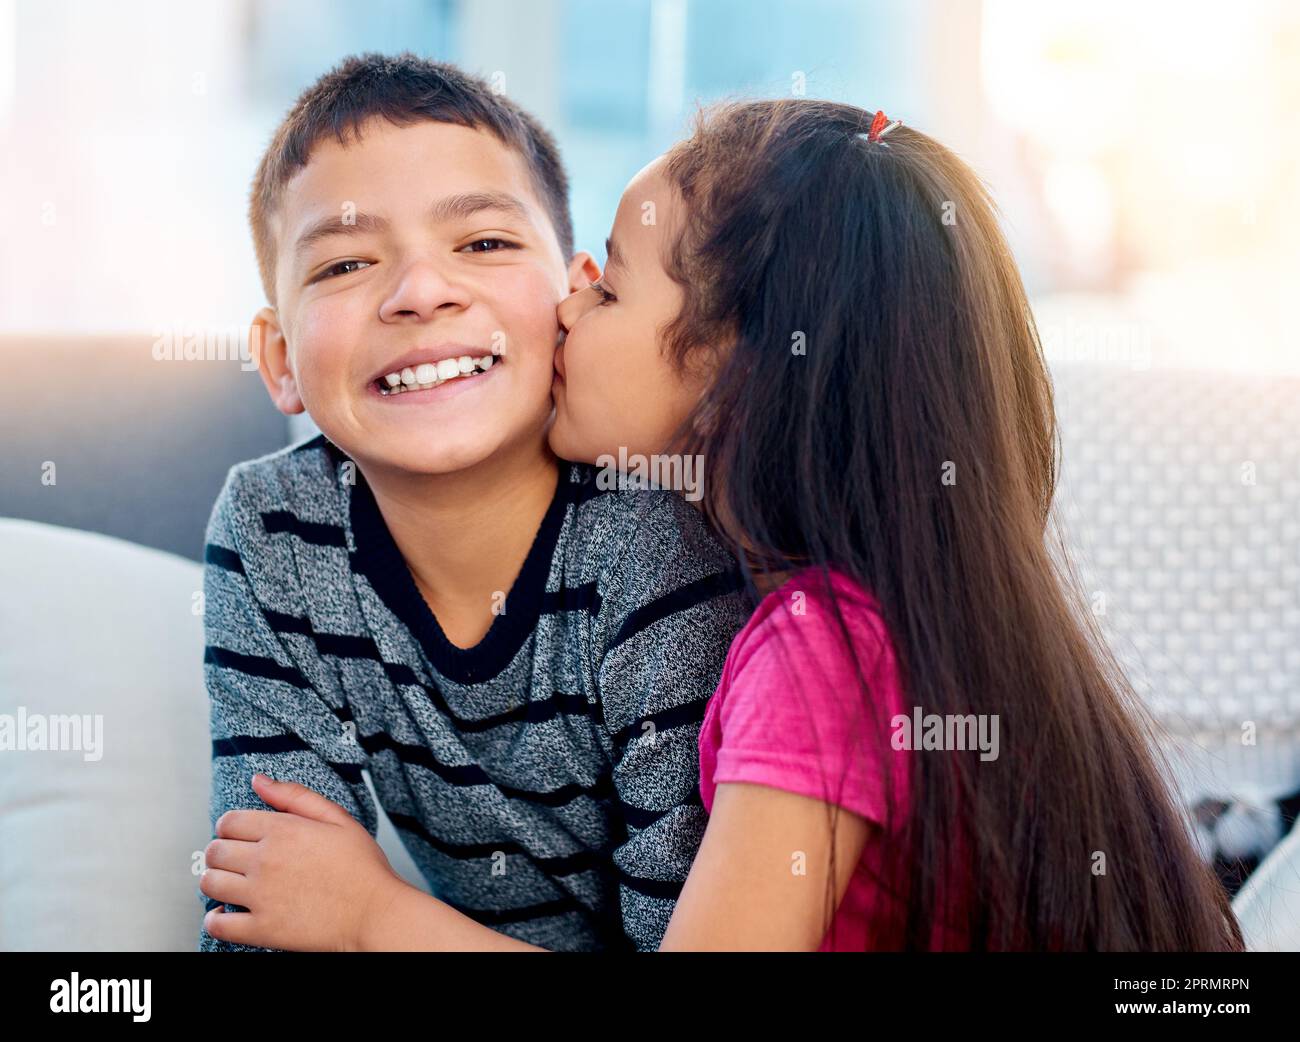 Grandes besos en la mejilla para su hermano mayor. una niña adorable besando a su hermano mayor en la mejilla en casa Foto de stock